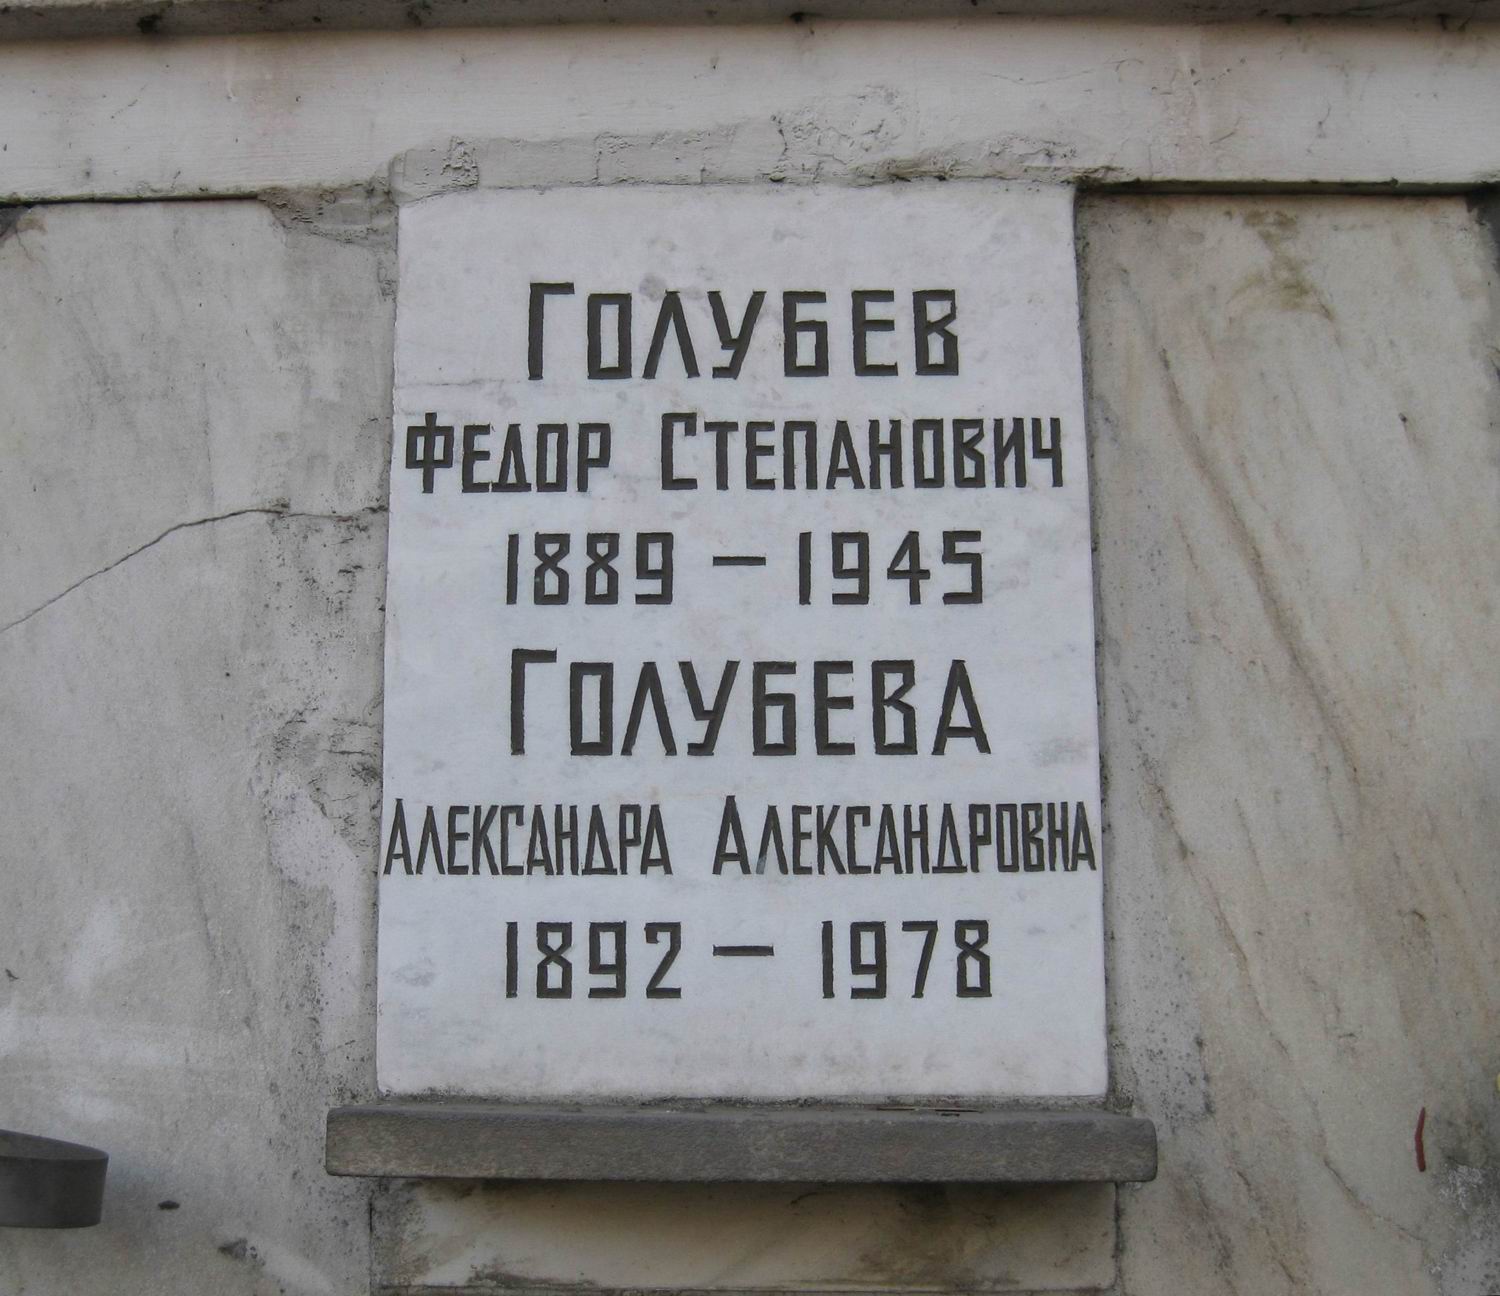 Плита на нише Голубева Ф.С. (1889–1945), на Новодевичьем кладбище (колумбарий [94]–4–1).